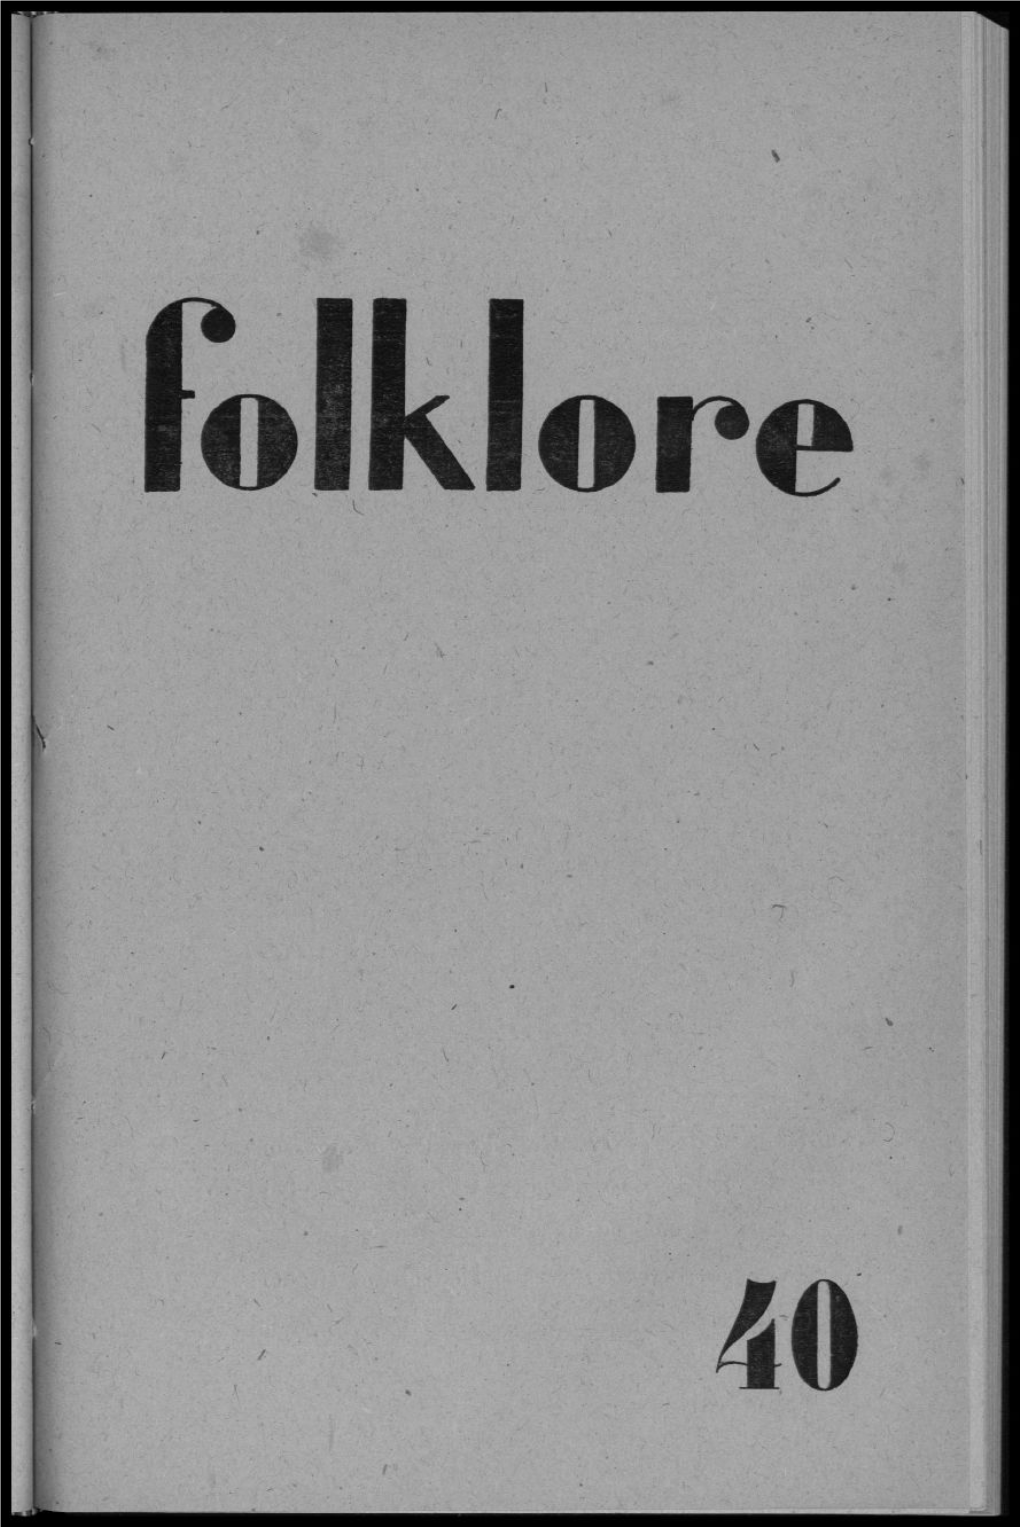 AUTOMNE 1945 Folklore (8M0 Année- N° 3) Automne 1945